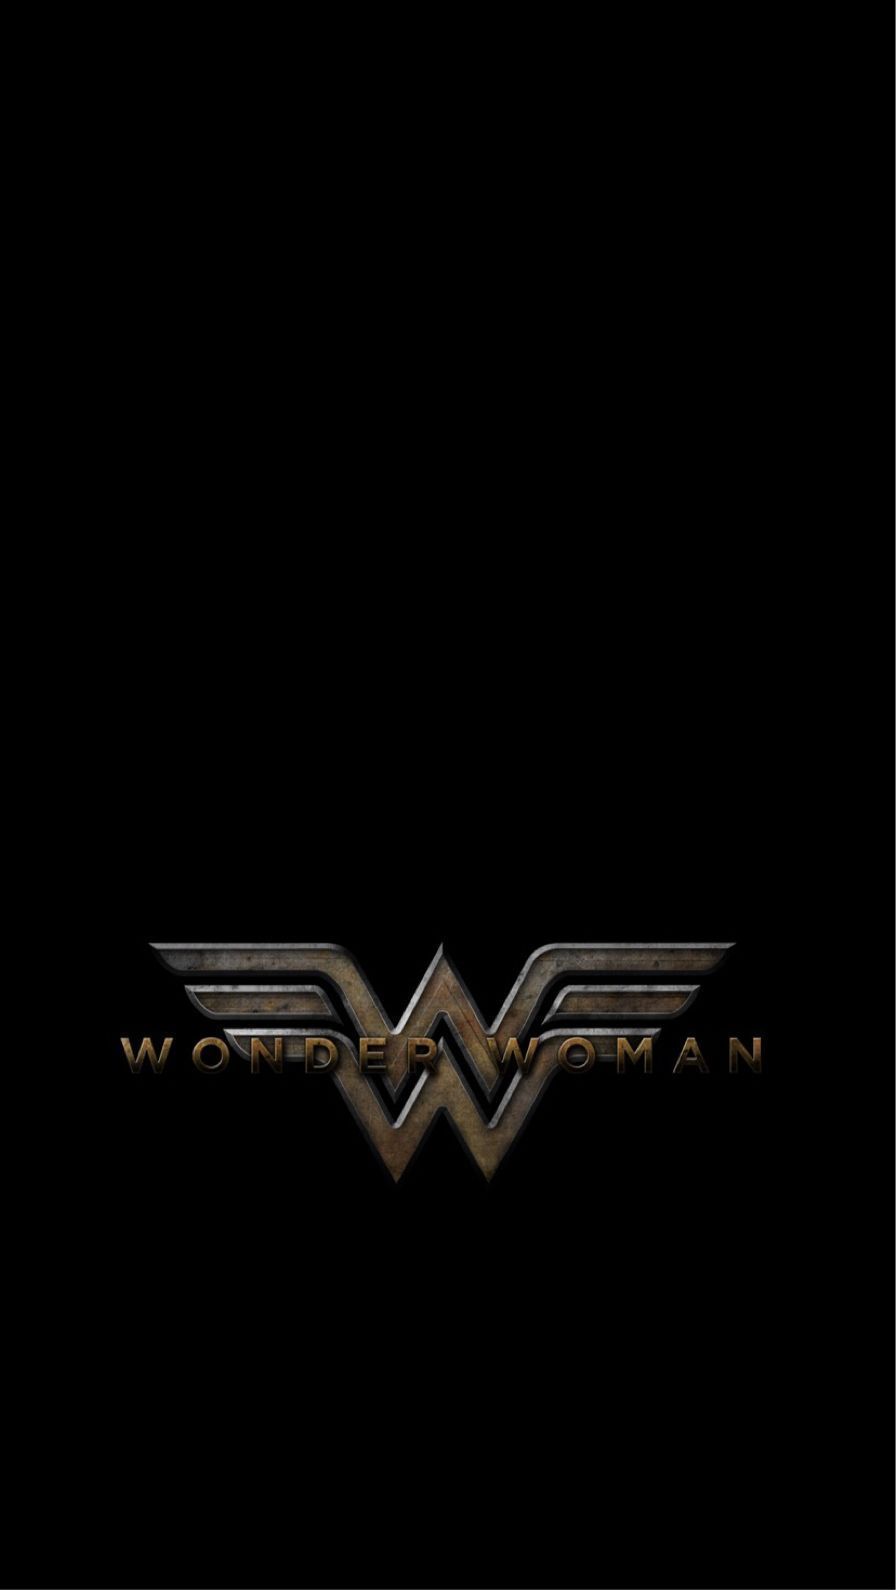 iPhone wallpaper. Phone wallpaper. Wonder Woman and Comic. iPhone wallpaper, Wonder woman, iPhone background image